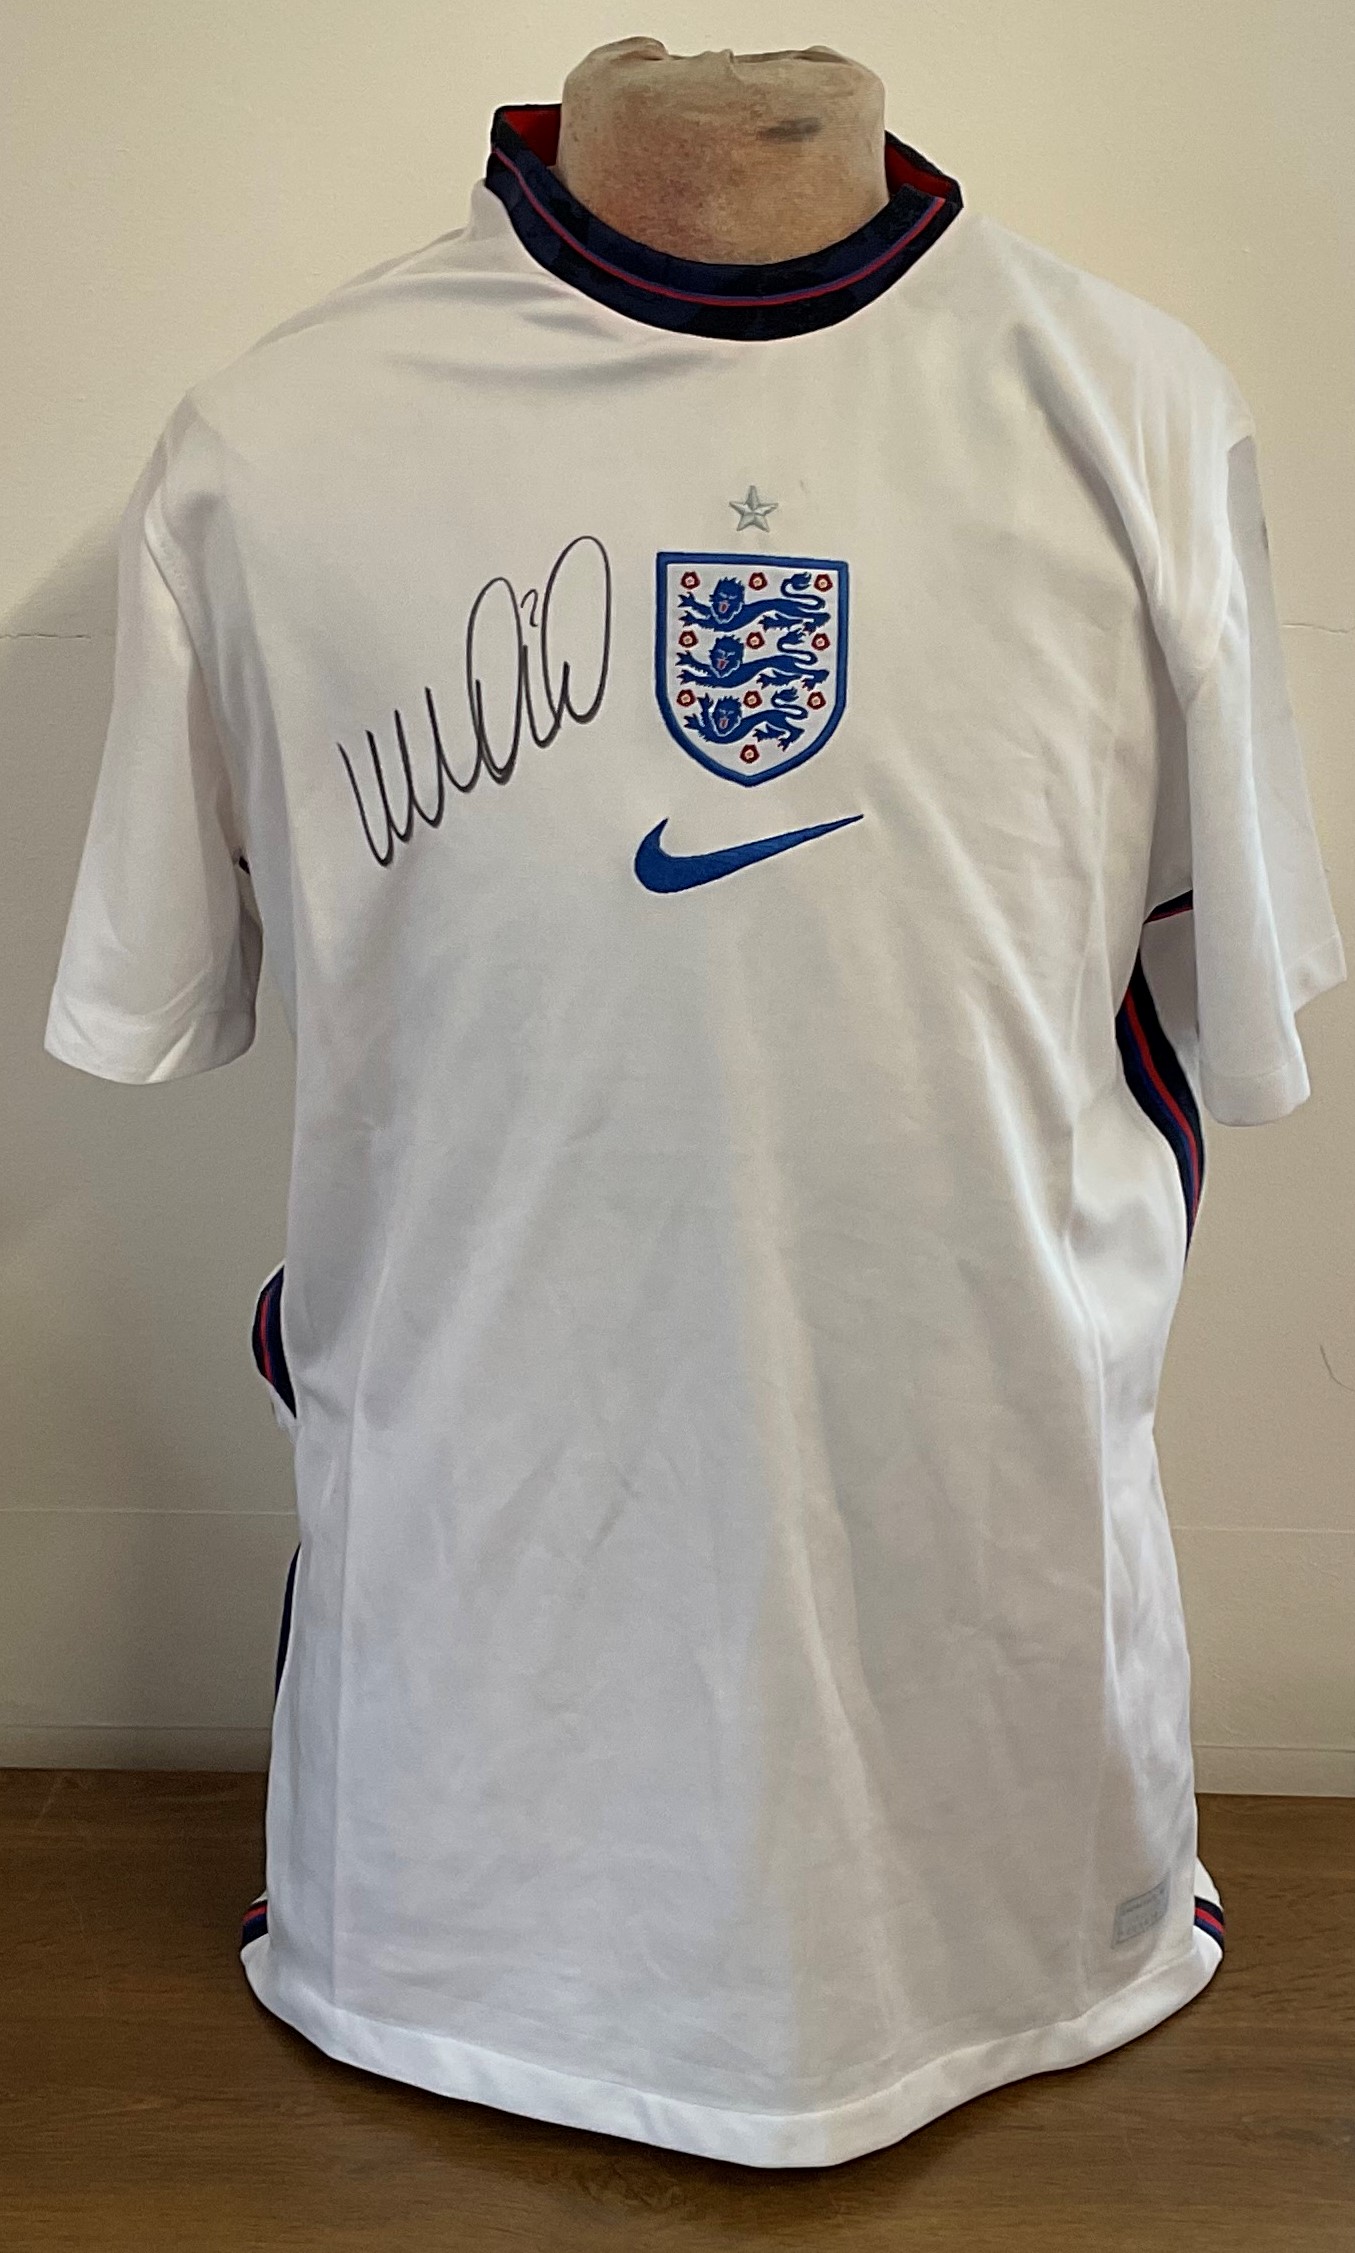 Football Kyle Walker signed England replica shirt size XL.